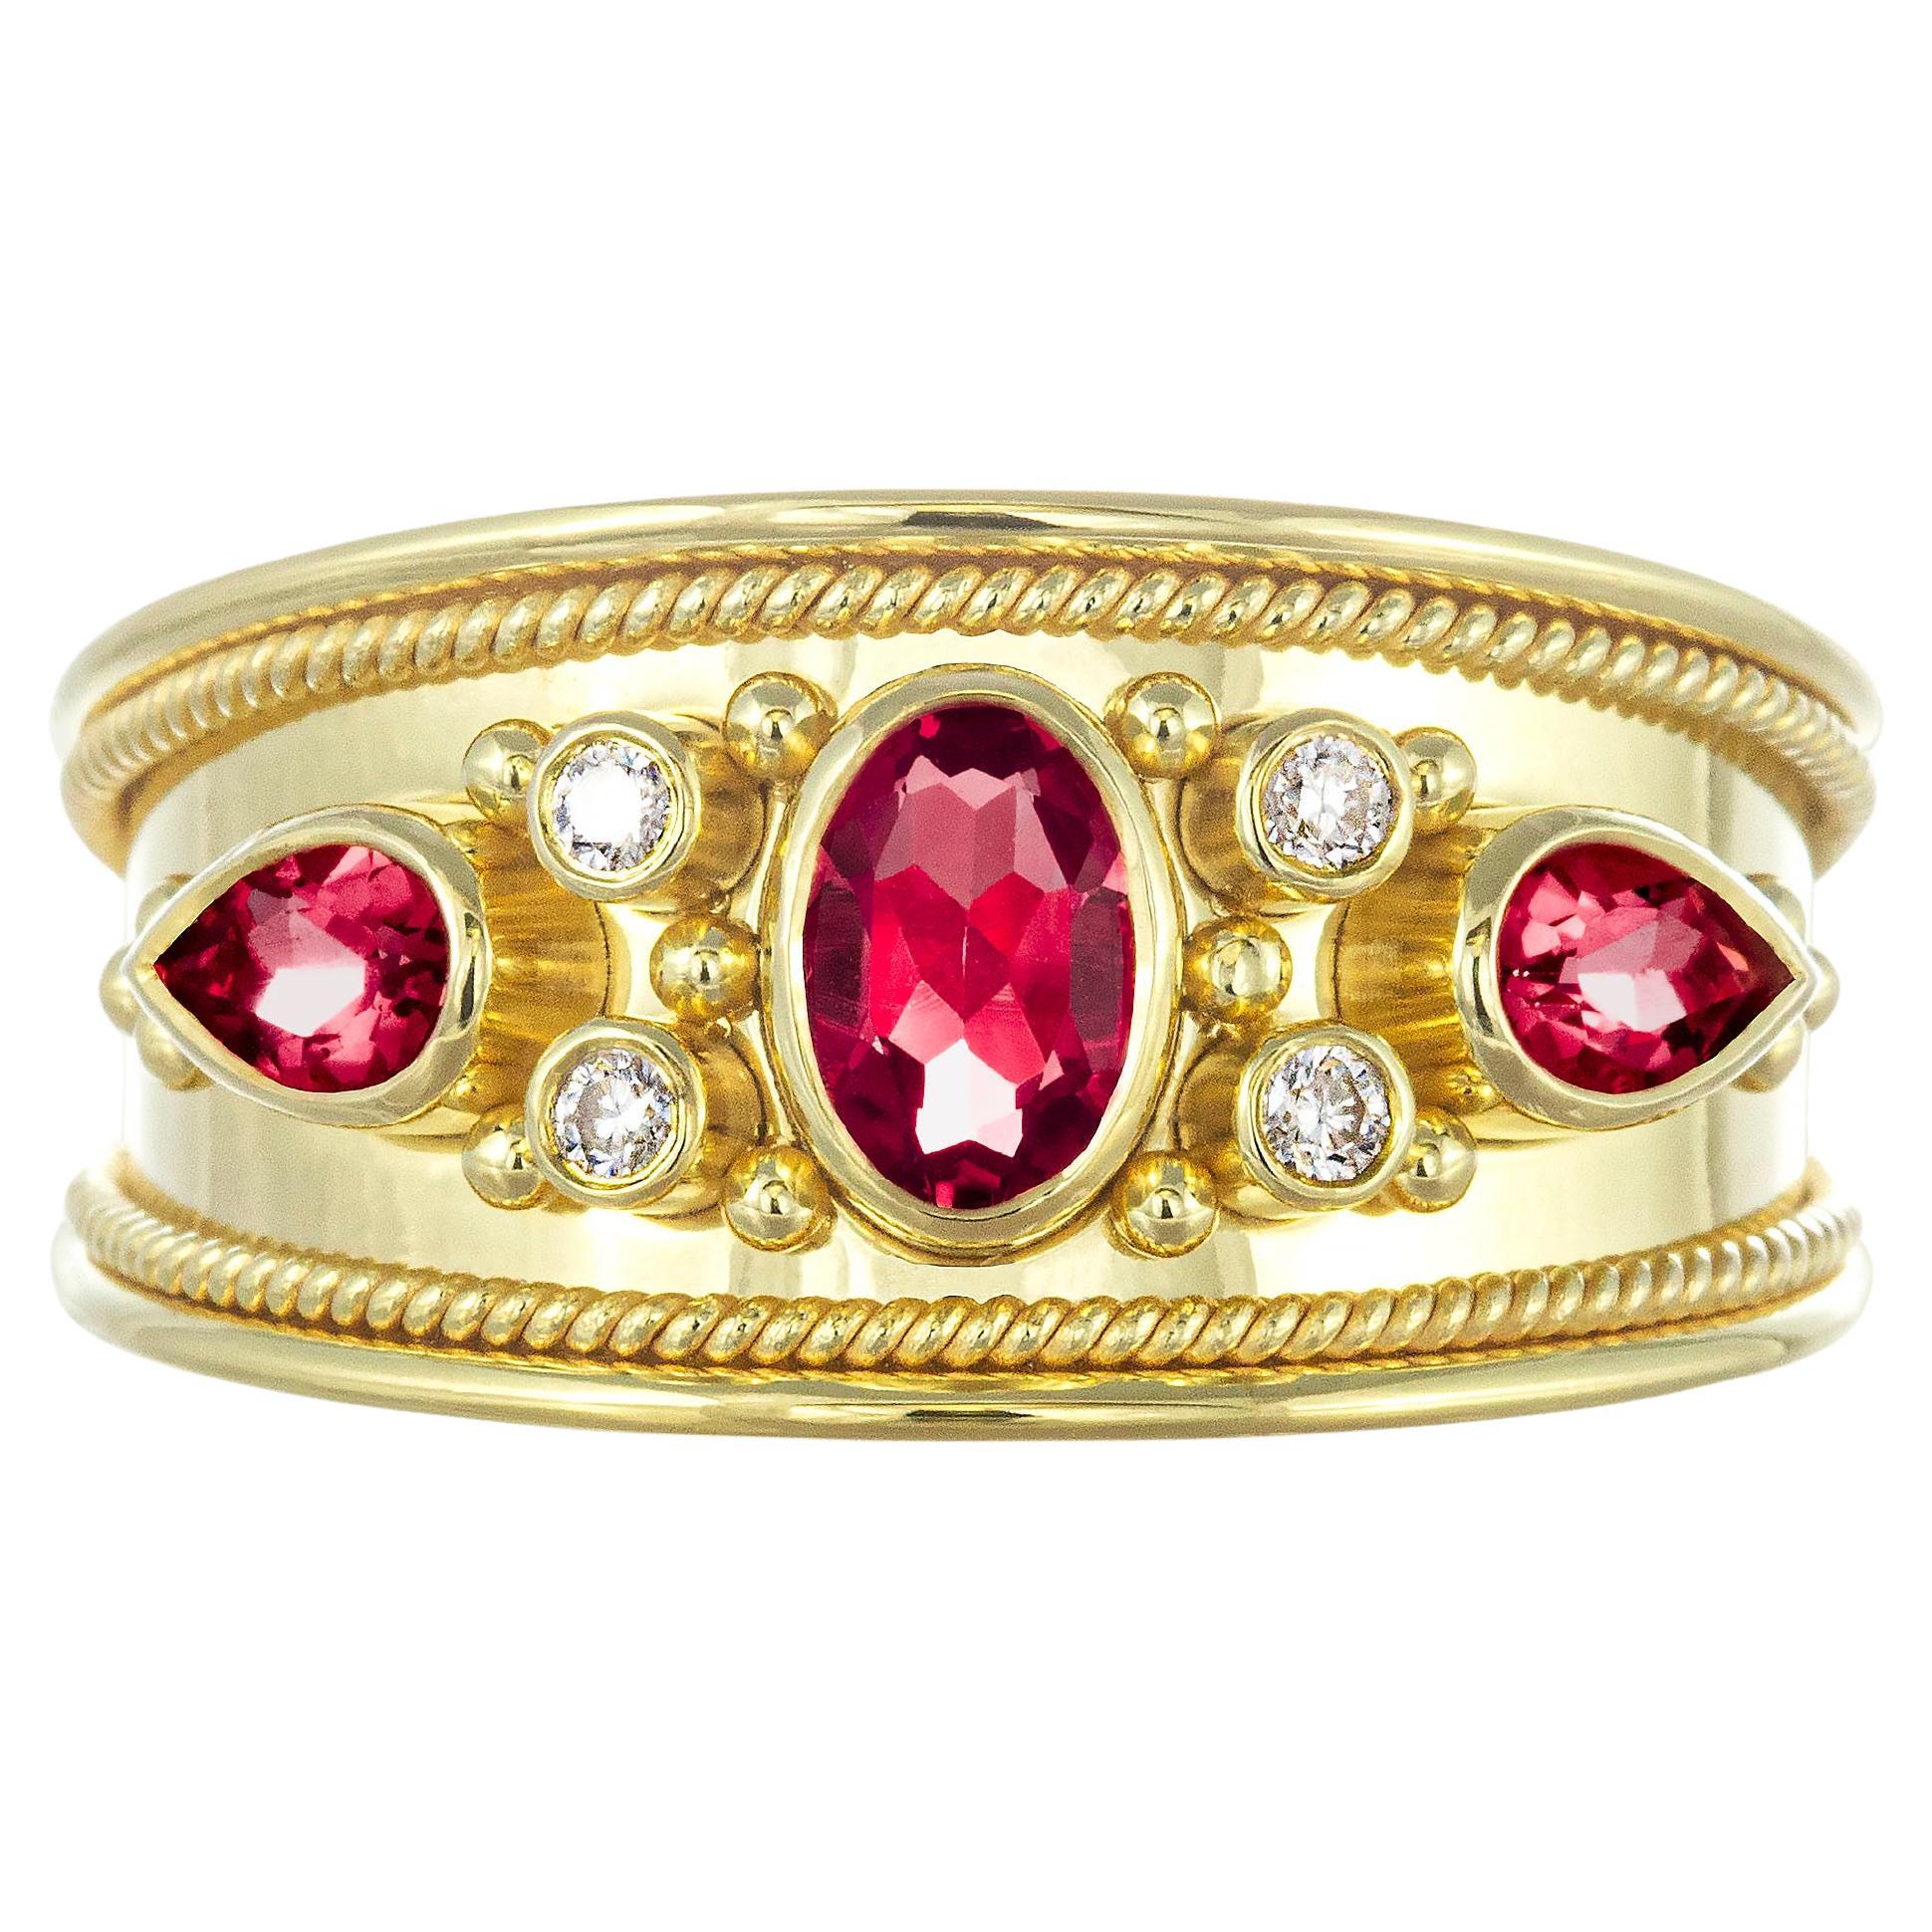 Byzantinischer Goldring aus Gold mit Rubinen, Diamanten und einer glänzenden Oberfläche